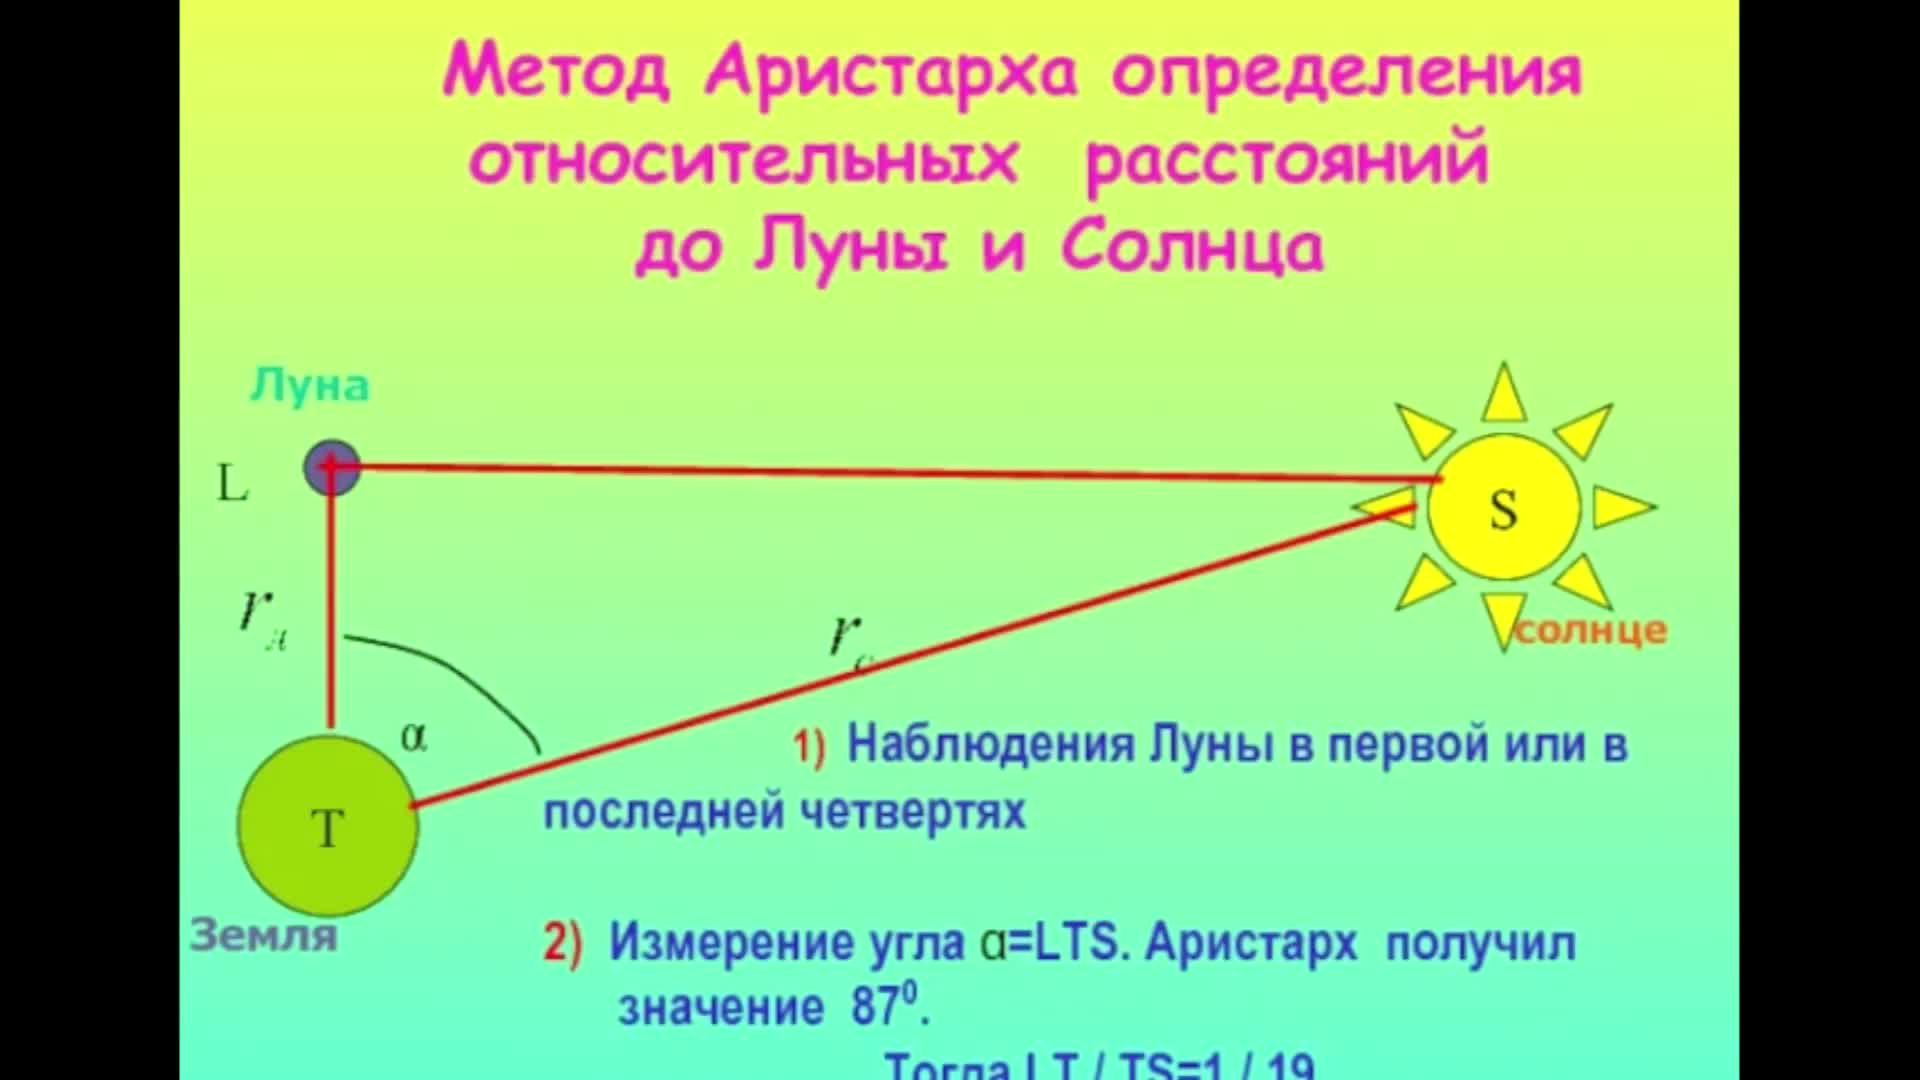 Расстояние до луны составляет. Способы определения расстояния до Луны. Как измерили расстояние от земли до солнца. Расстояние от земли до Луны и солнца. Как измерить расстояние до Луны.